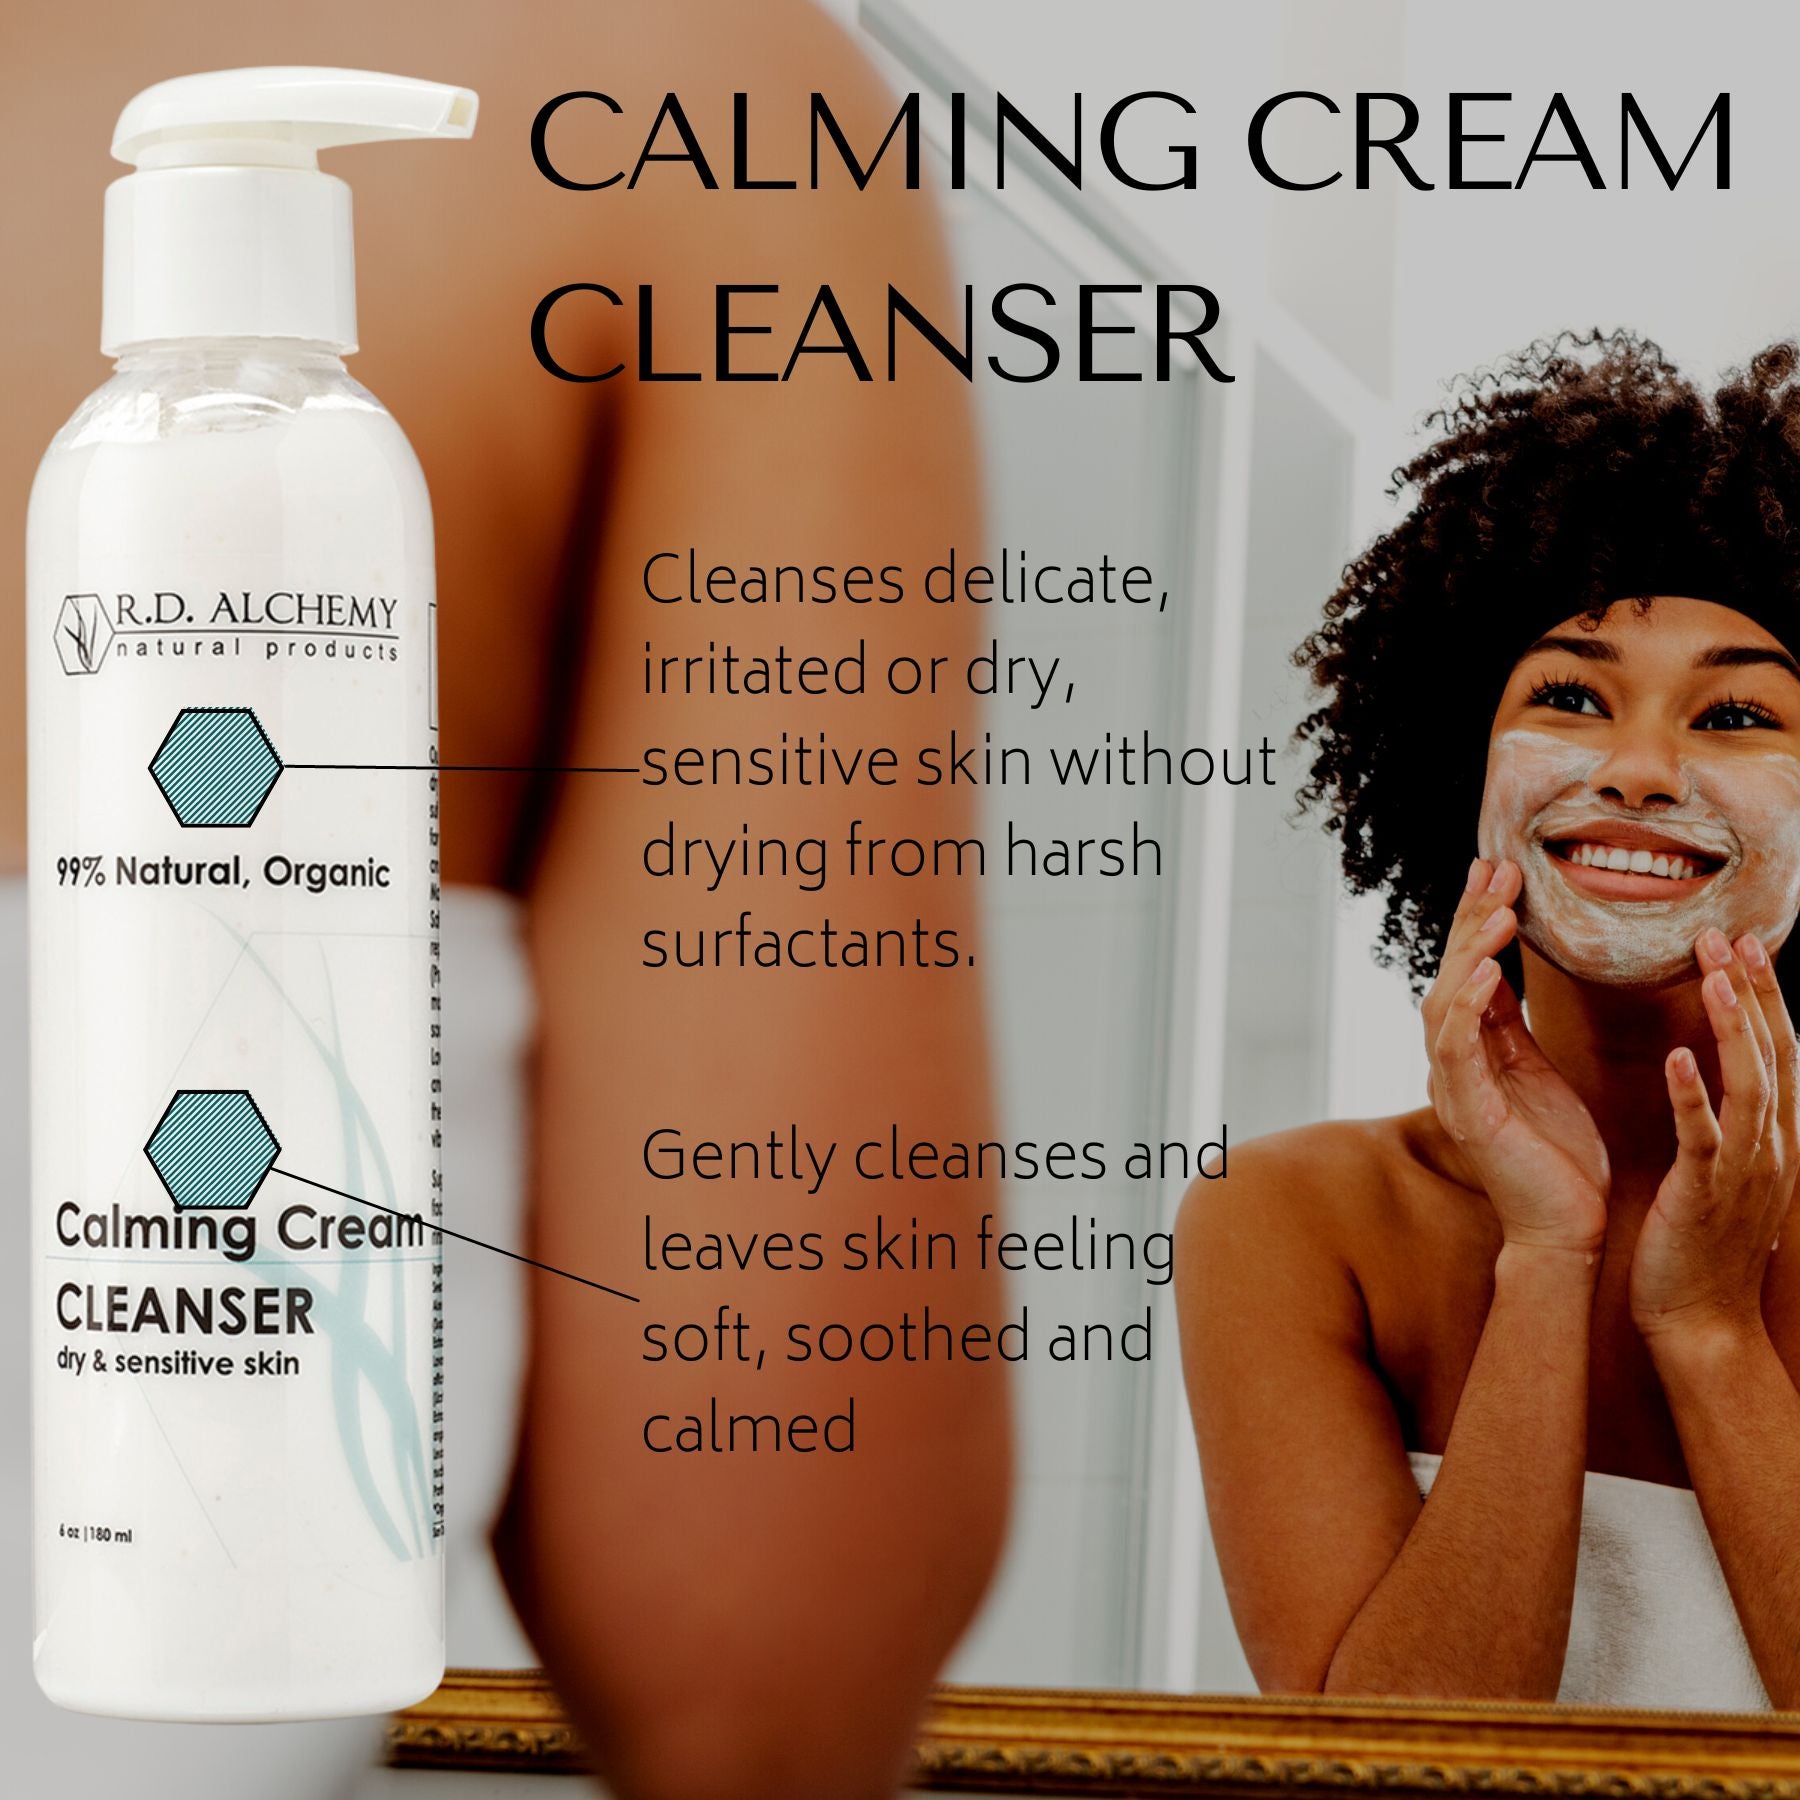 Calming cream cleanser